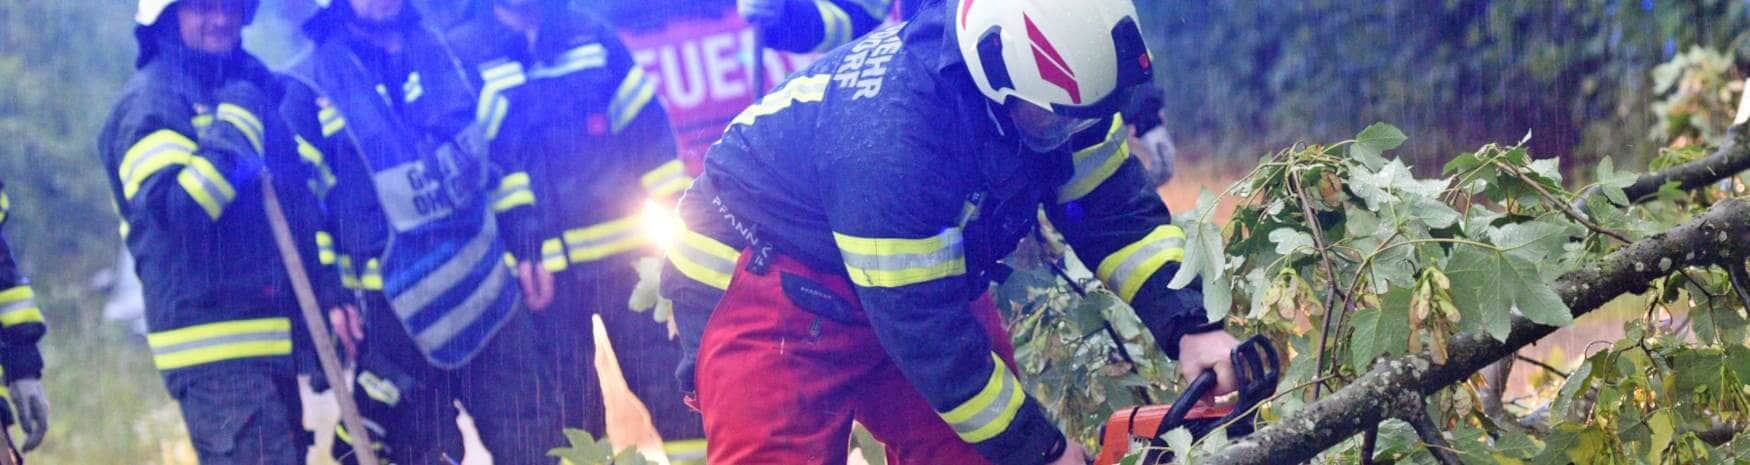 Feuerwehrmänner im Einsatz – ein gefüllter Rettungsdienst Holster ist stets griffbereit